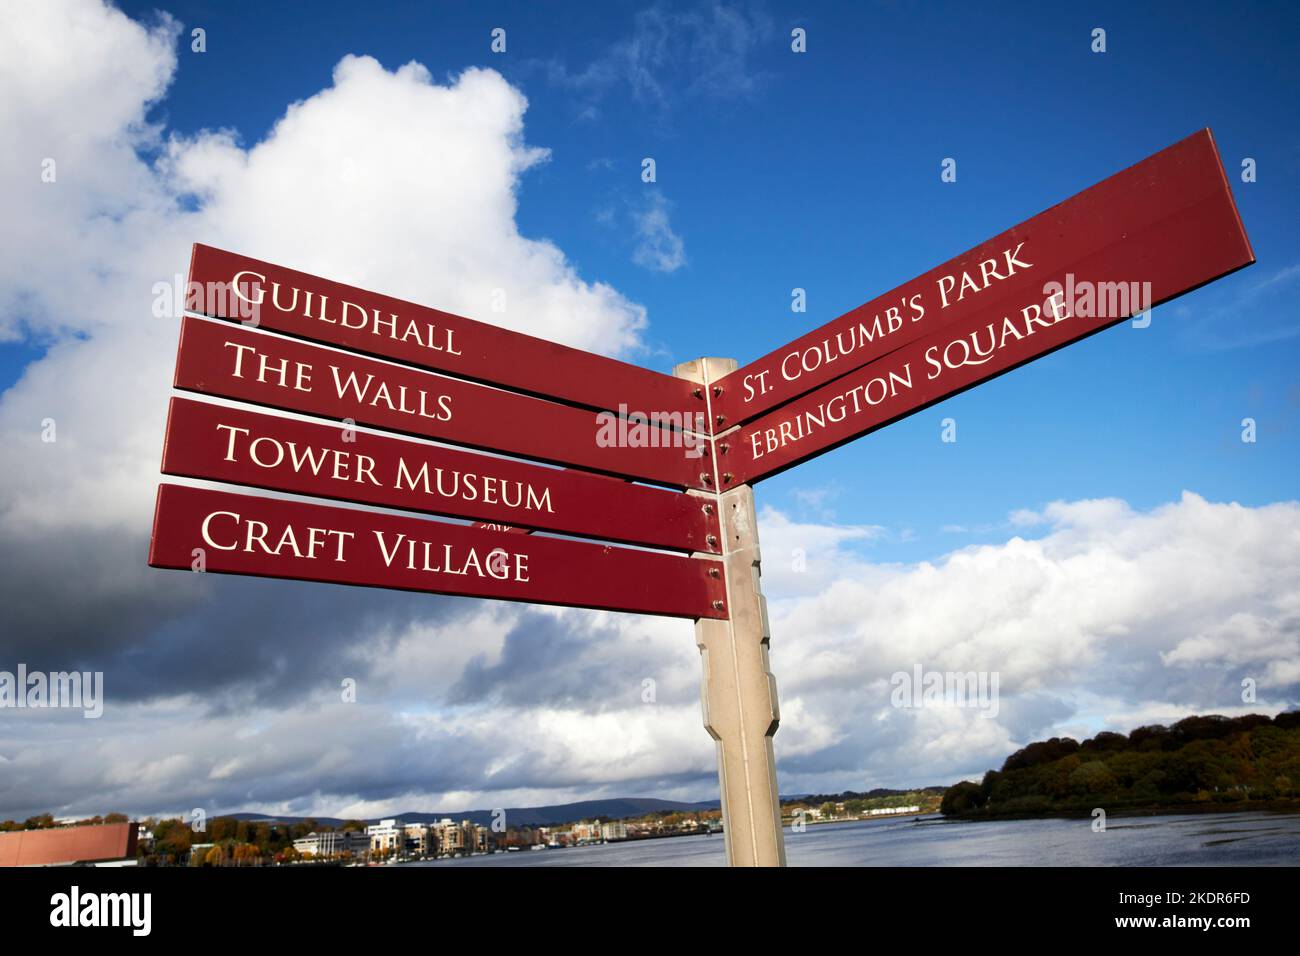 panneau pour les sites touristiques de derry londonderry, irlande du nord, royaume-uni Banque D'Images